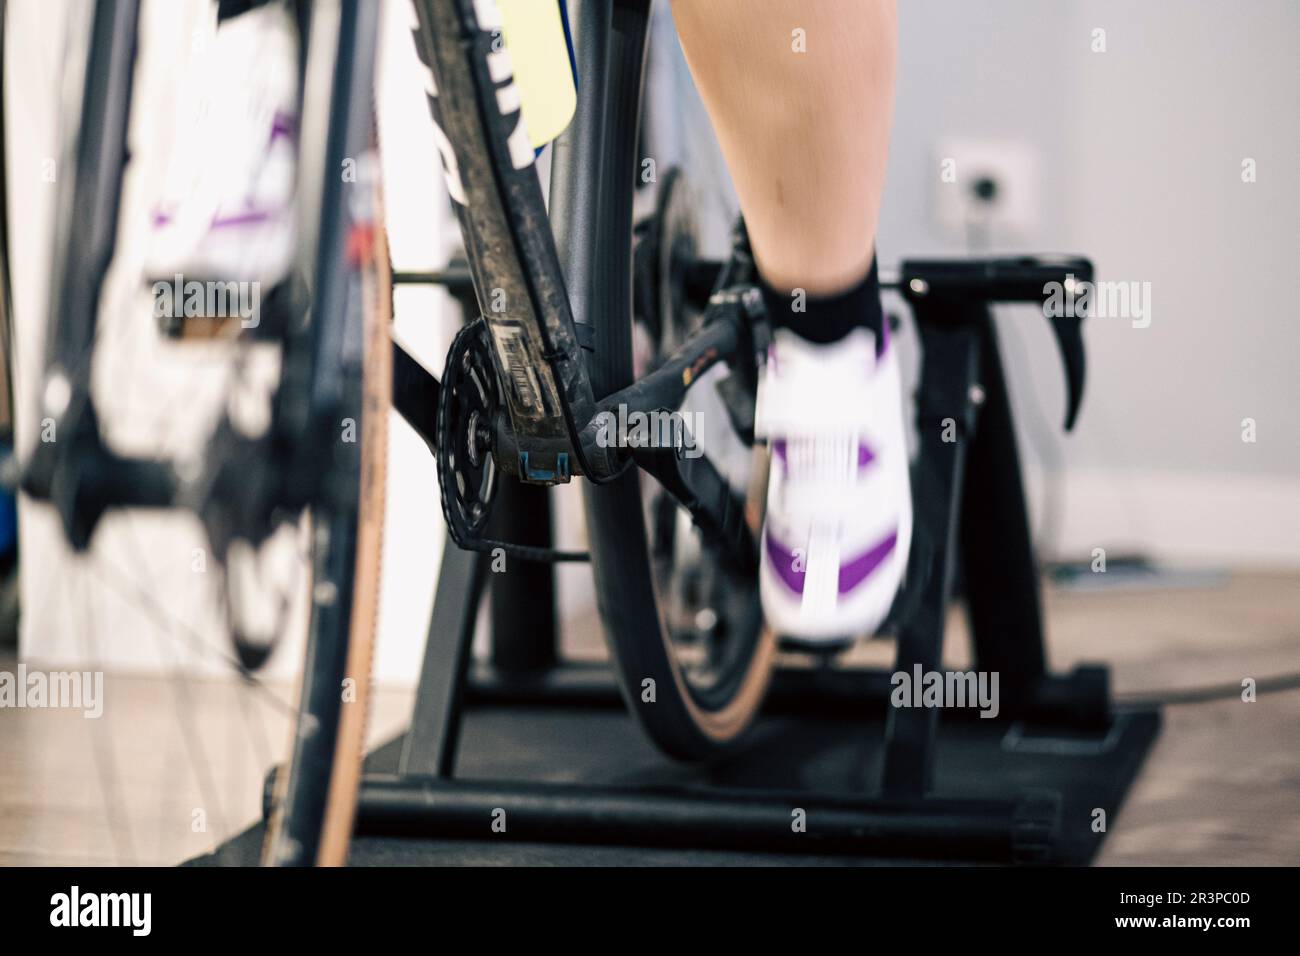 Füße und Beine drehen sich auf einem Kettenrad in einem Indoor-Trainer Stockfoto